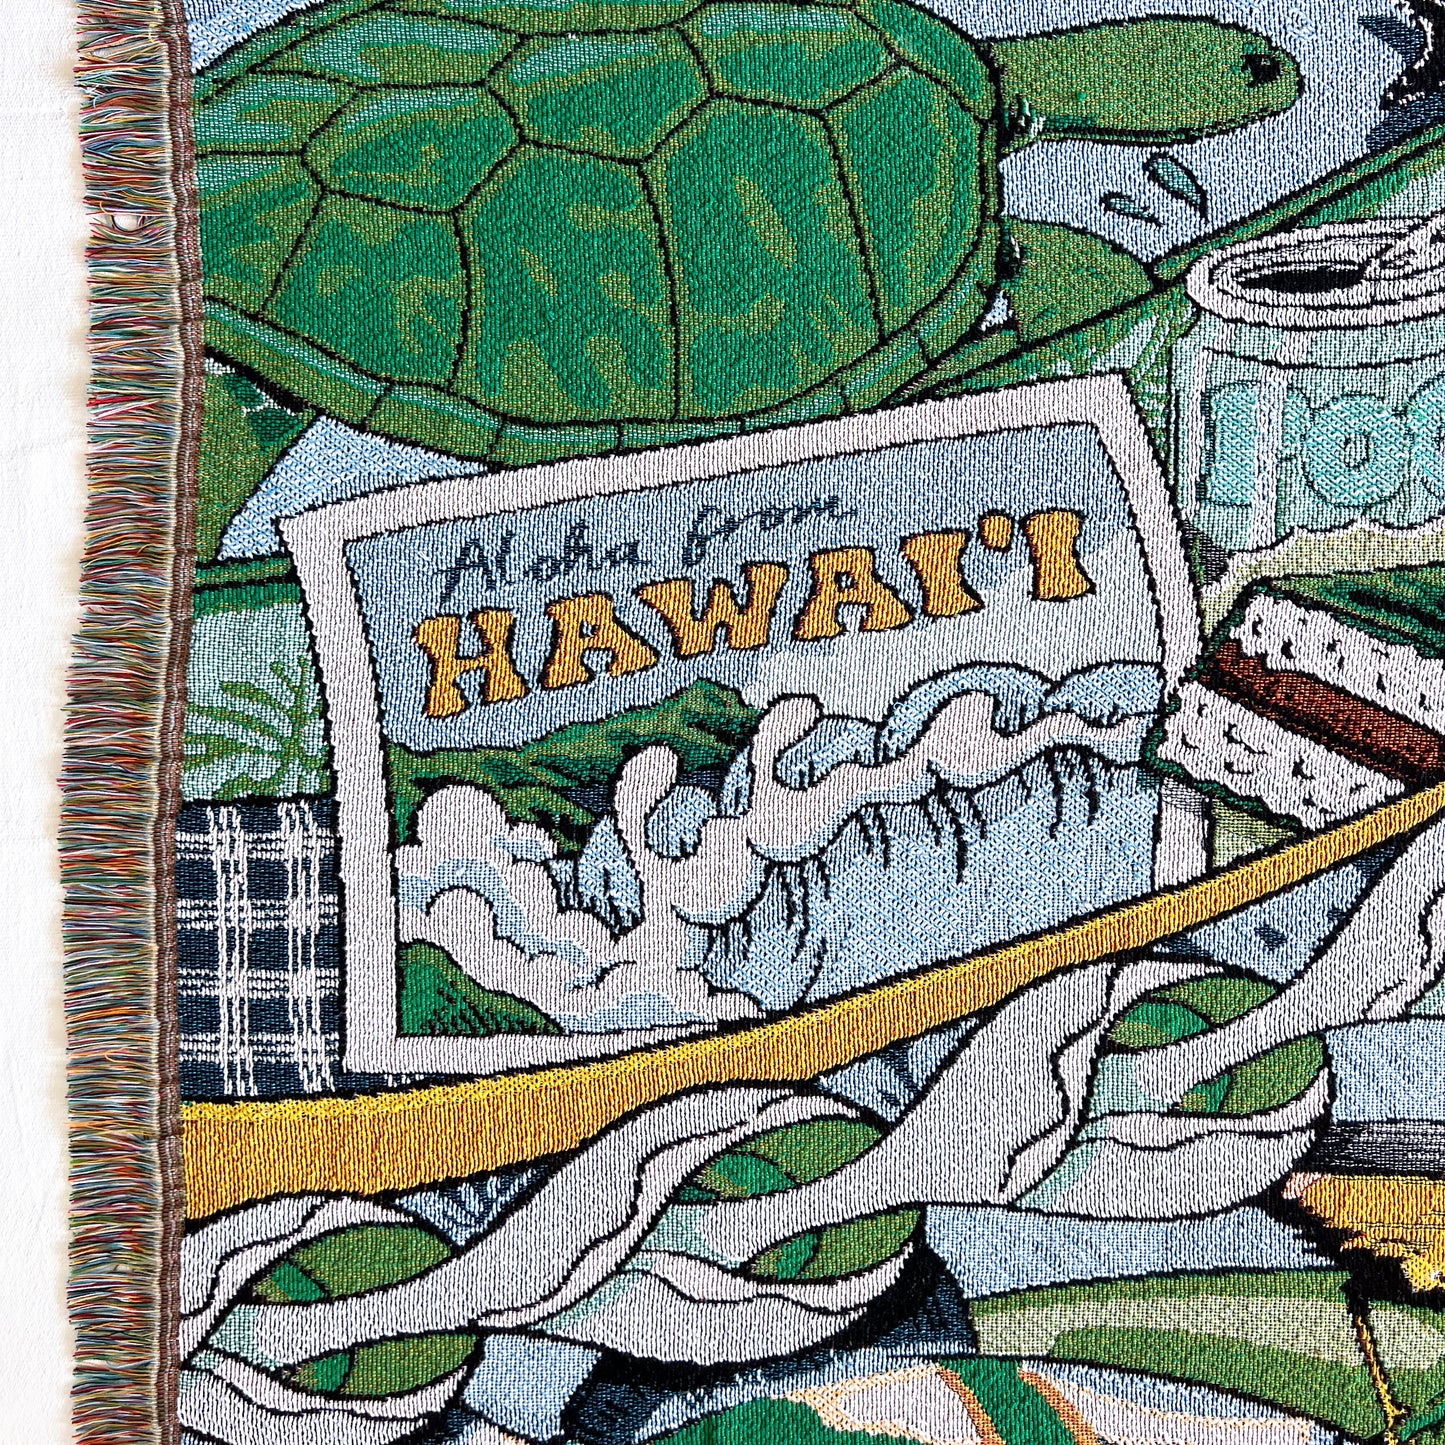 "Aloha from Hawai'i" Woven Blanket